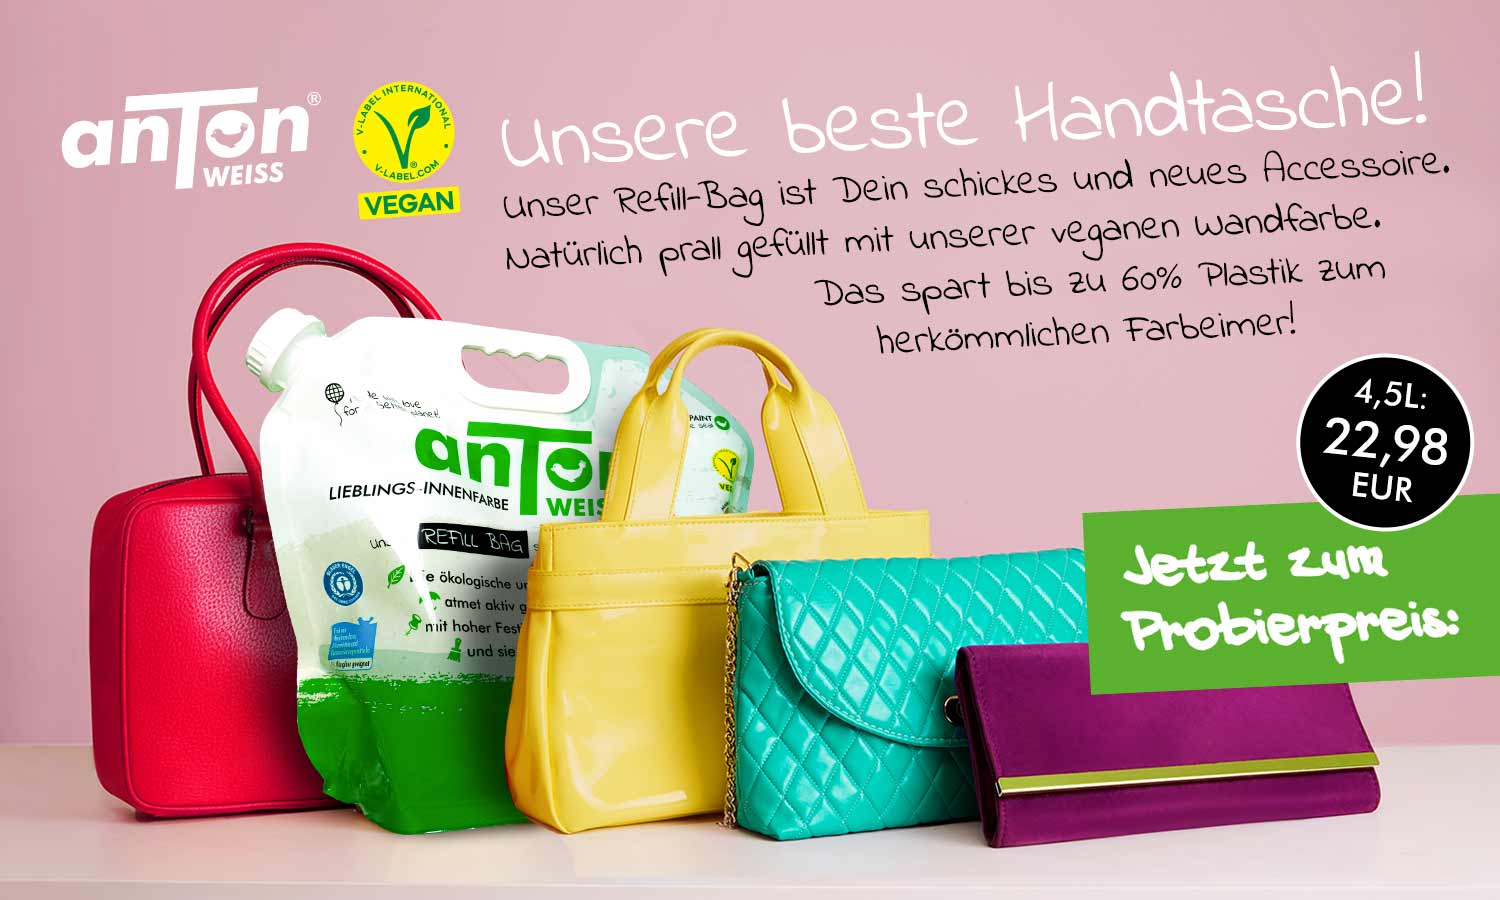 Unsere beste Handtasche: Vegane Wandfarbe im Refill-Bag